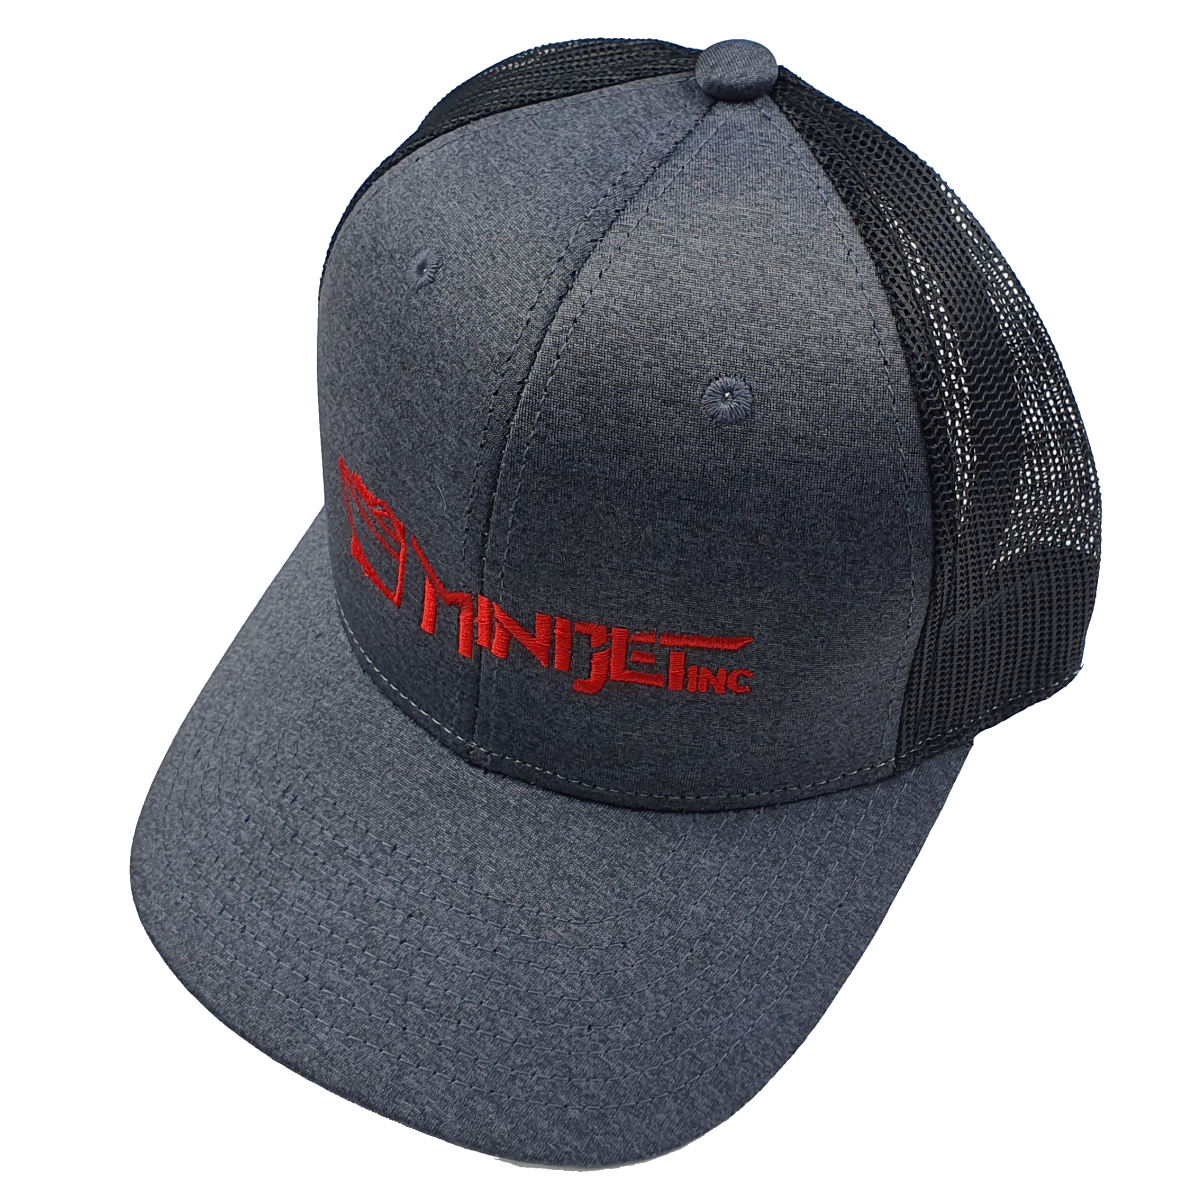 Minijet Hat Black back Charcoal Front Red Logo